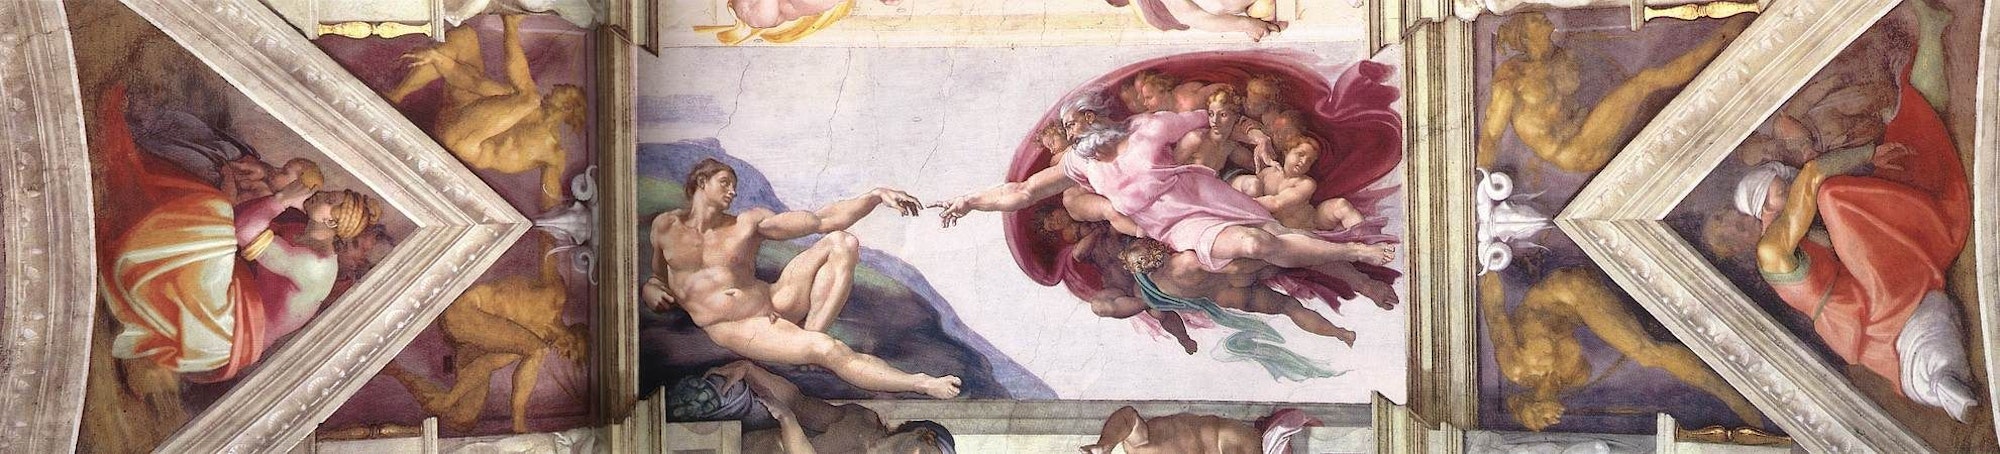 Die Erschaffung Adams, Deckenfresco in der Sixtinischen Kapelle im Vatikan